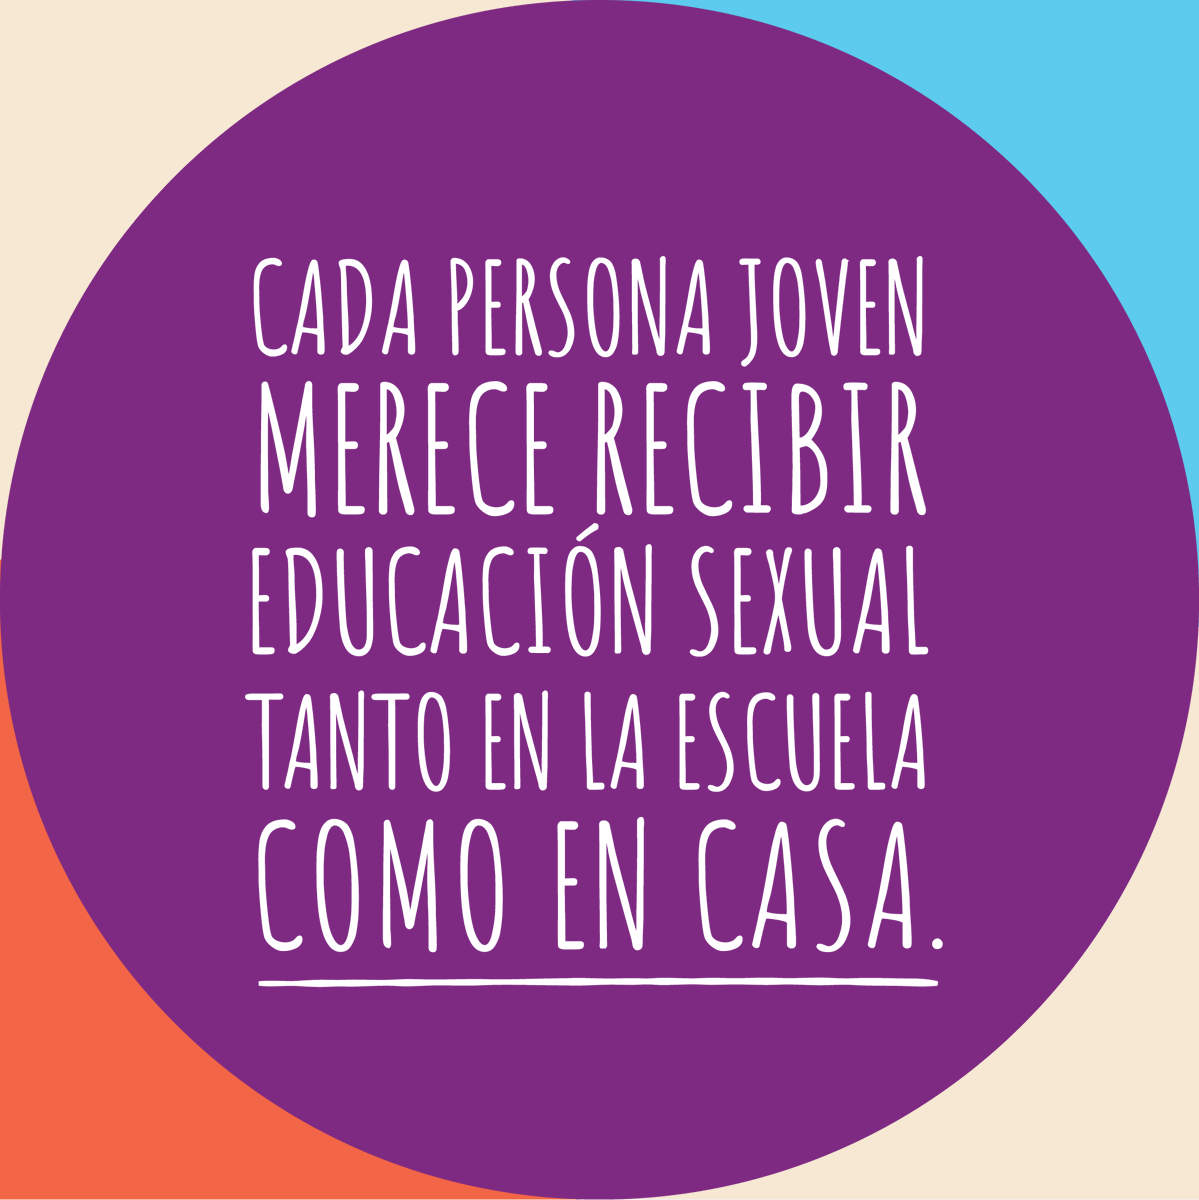 ¡Mayo es el mes de educación sexual para todas, todos, y todes! Todas las personas queremos la mejor educación para nuestros hijos, incluyendo una educación sexual apropiada para su edad, médicamente precisa e inclusiva.